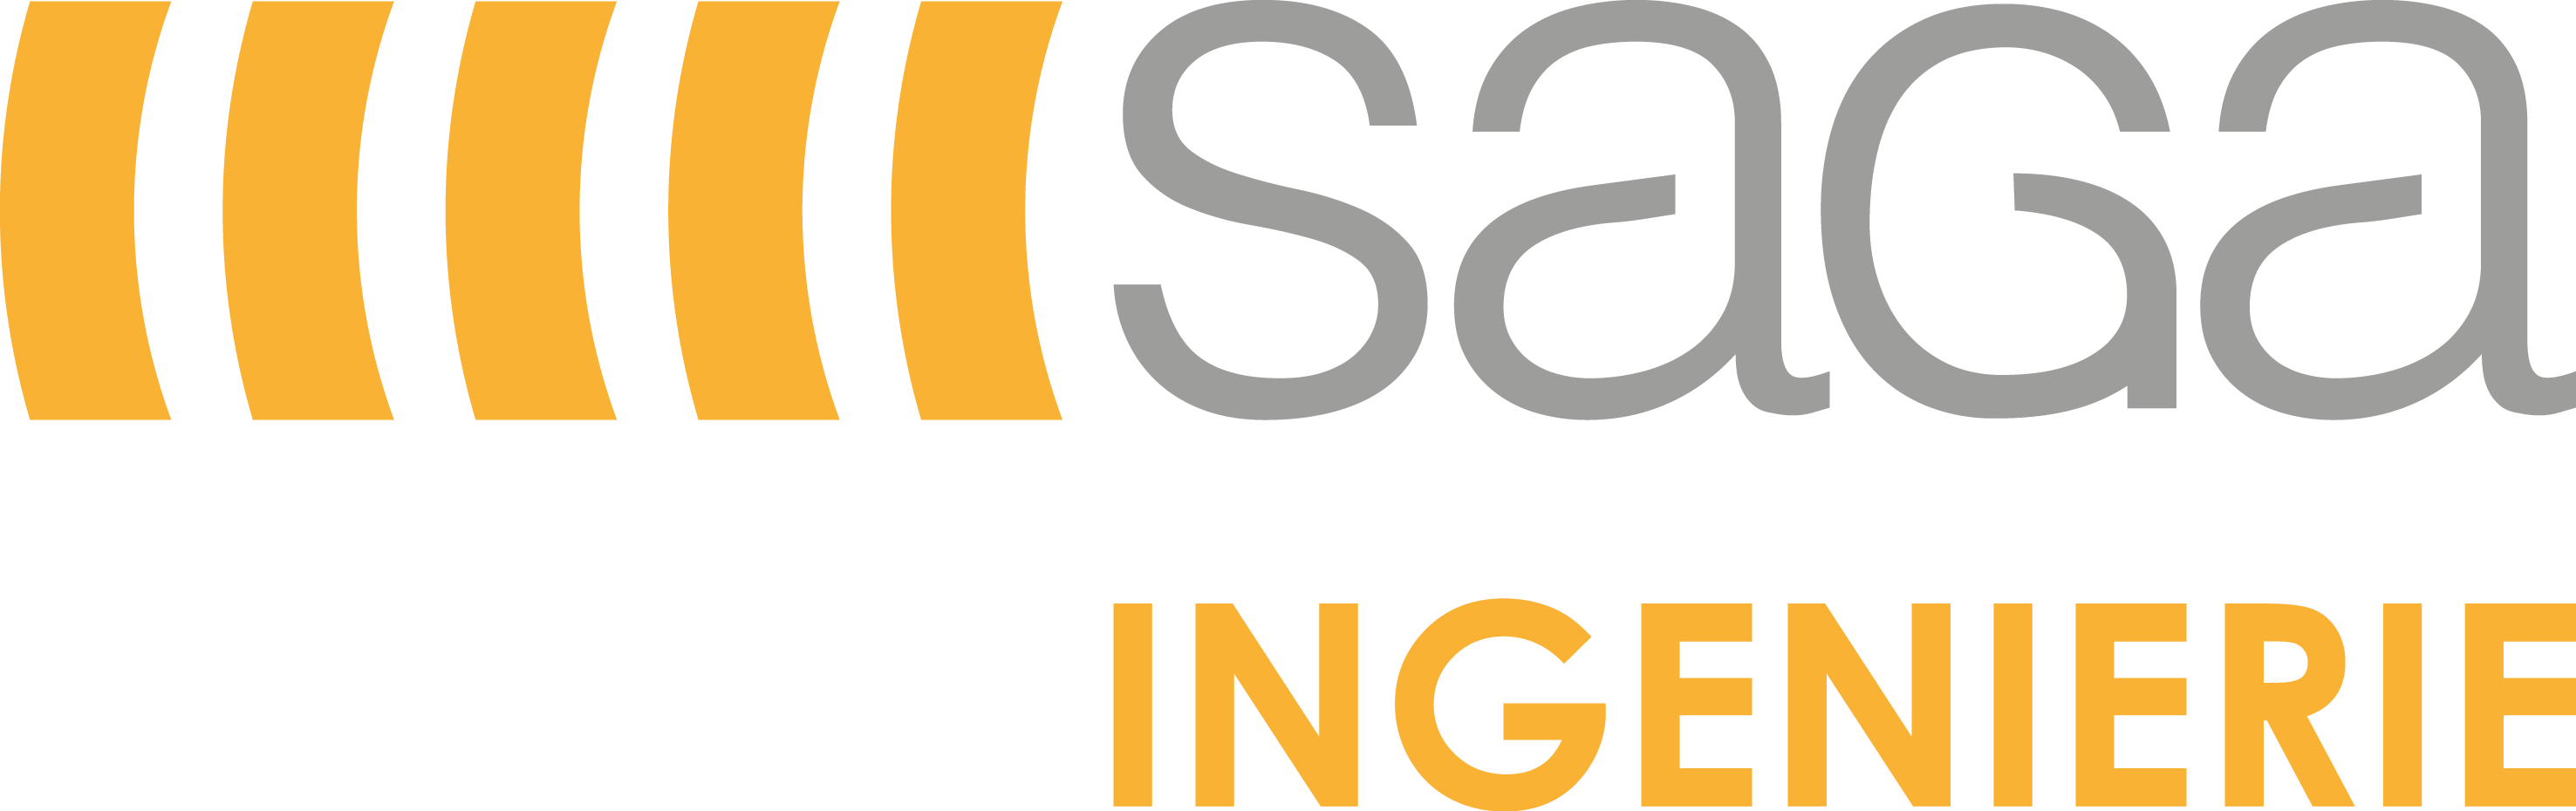 logo-saga